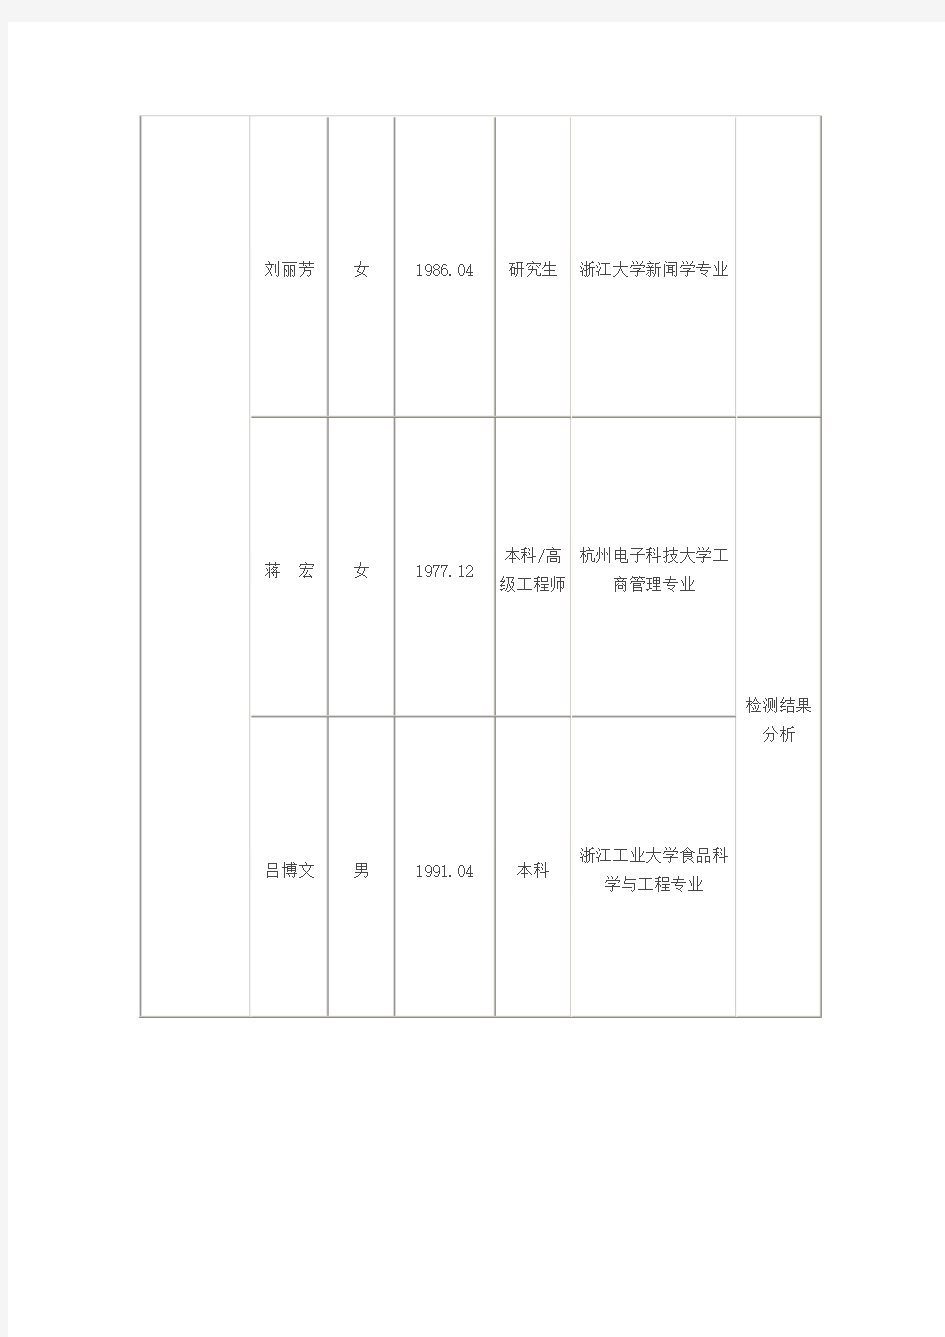 杭州市质量技术监督局部分直属事业单位公开招聘拟聘用人员名单do